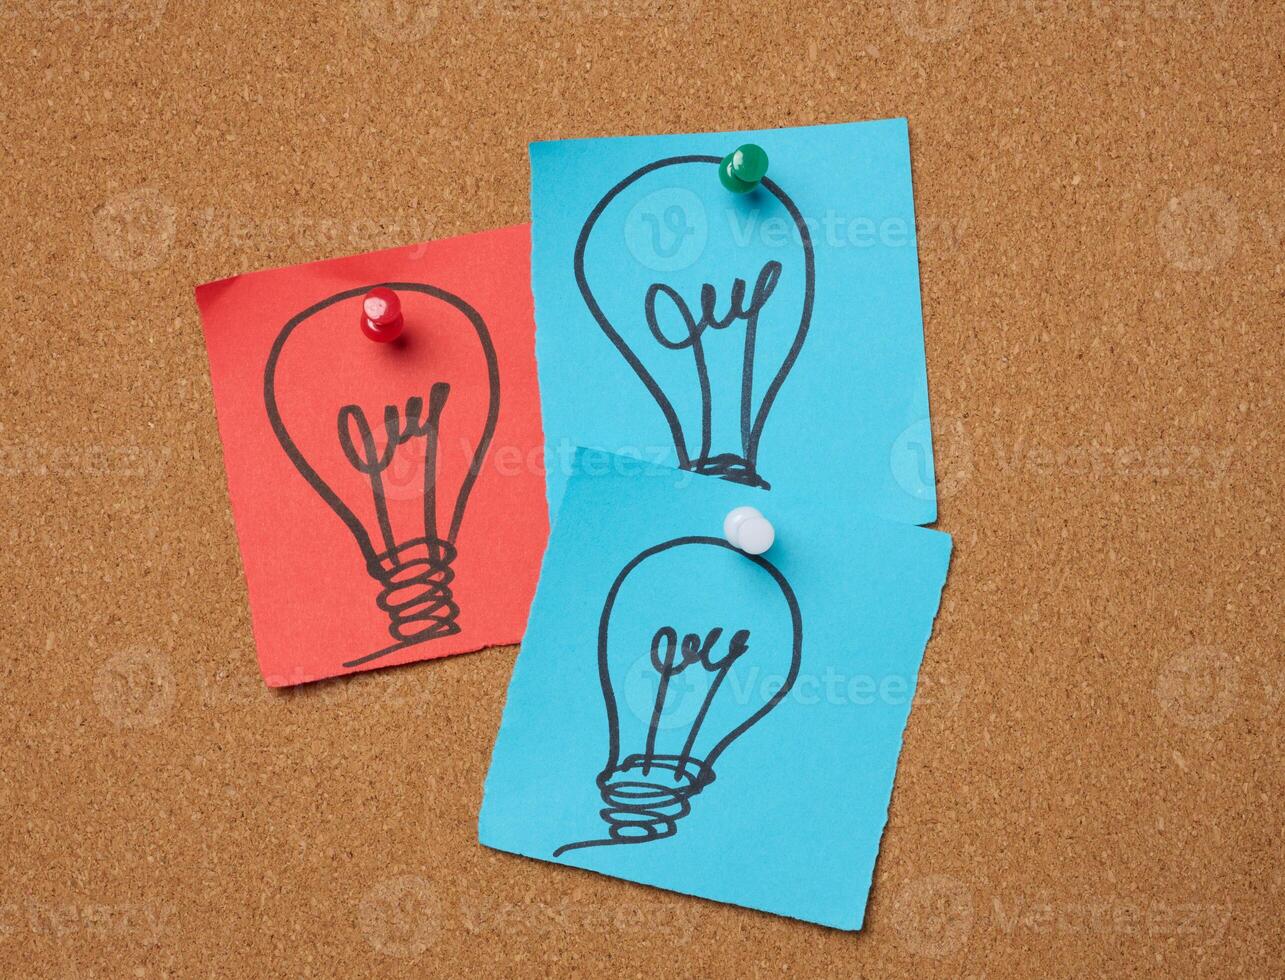 dibujado eléctrico bombillas en papel hojas, significando el concepto de buscando para nuevo ideas foto